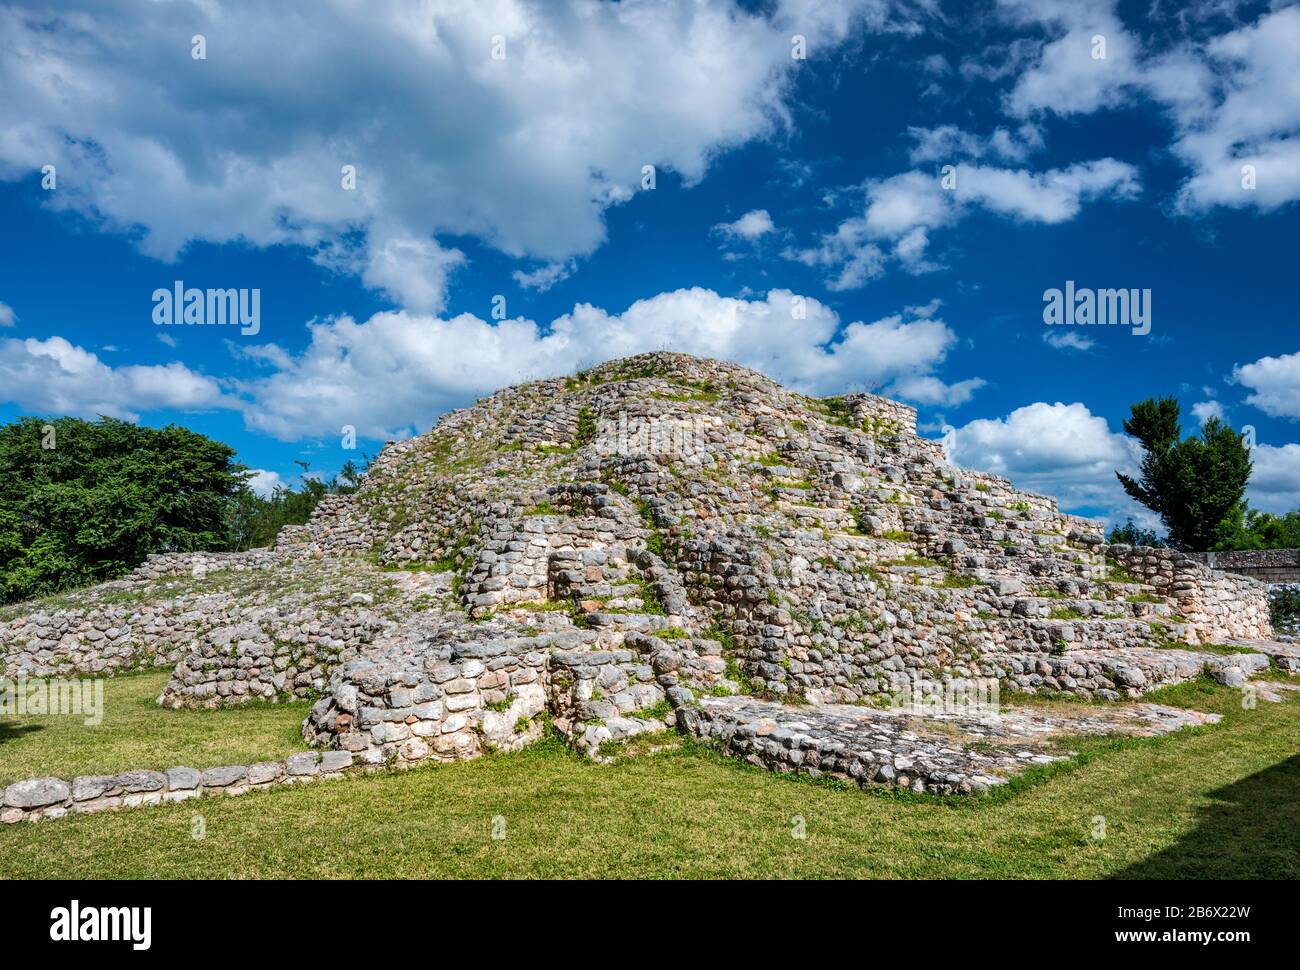 Step piramide presso il sito archeologico Maya ad Acanceh, stato dello Yucatan, Messico Foto Stock